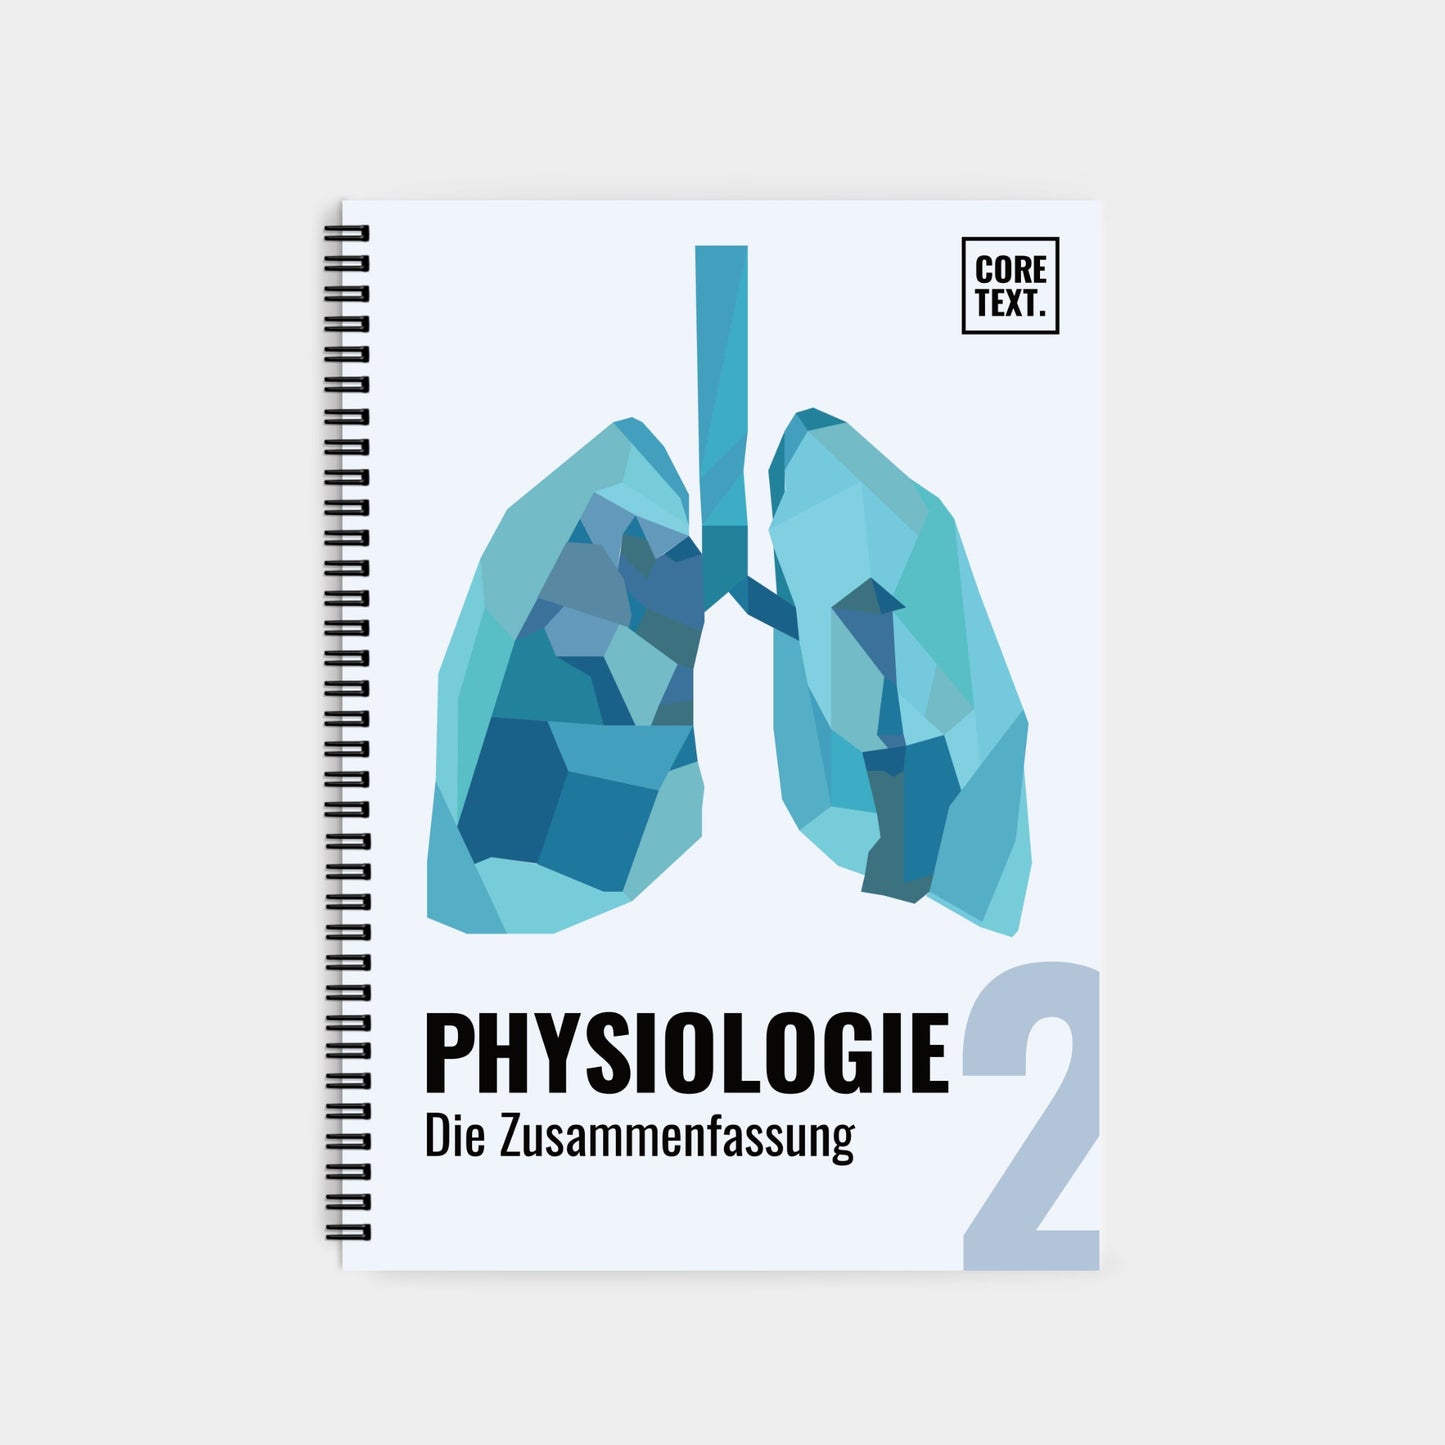 Physiologie 2: Die Zusammenfassung - Coretext